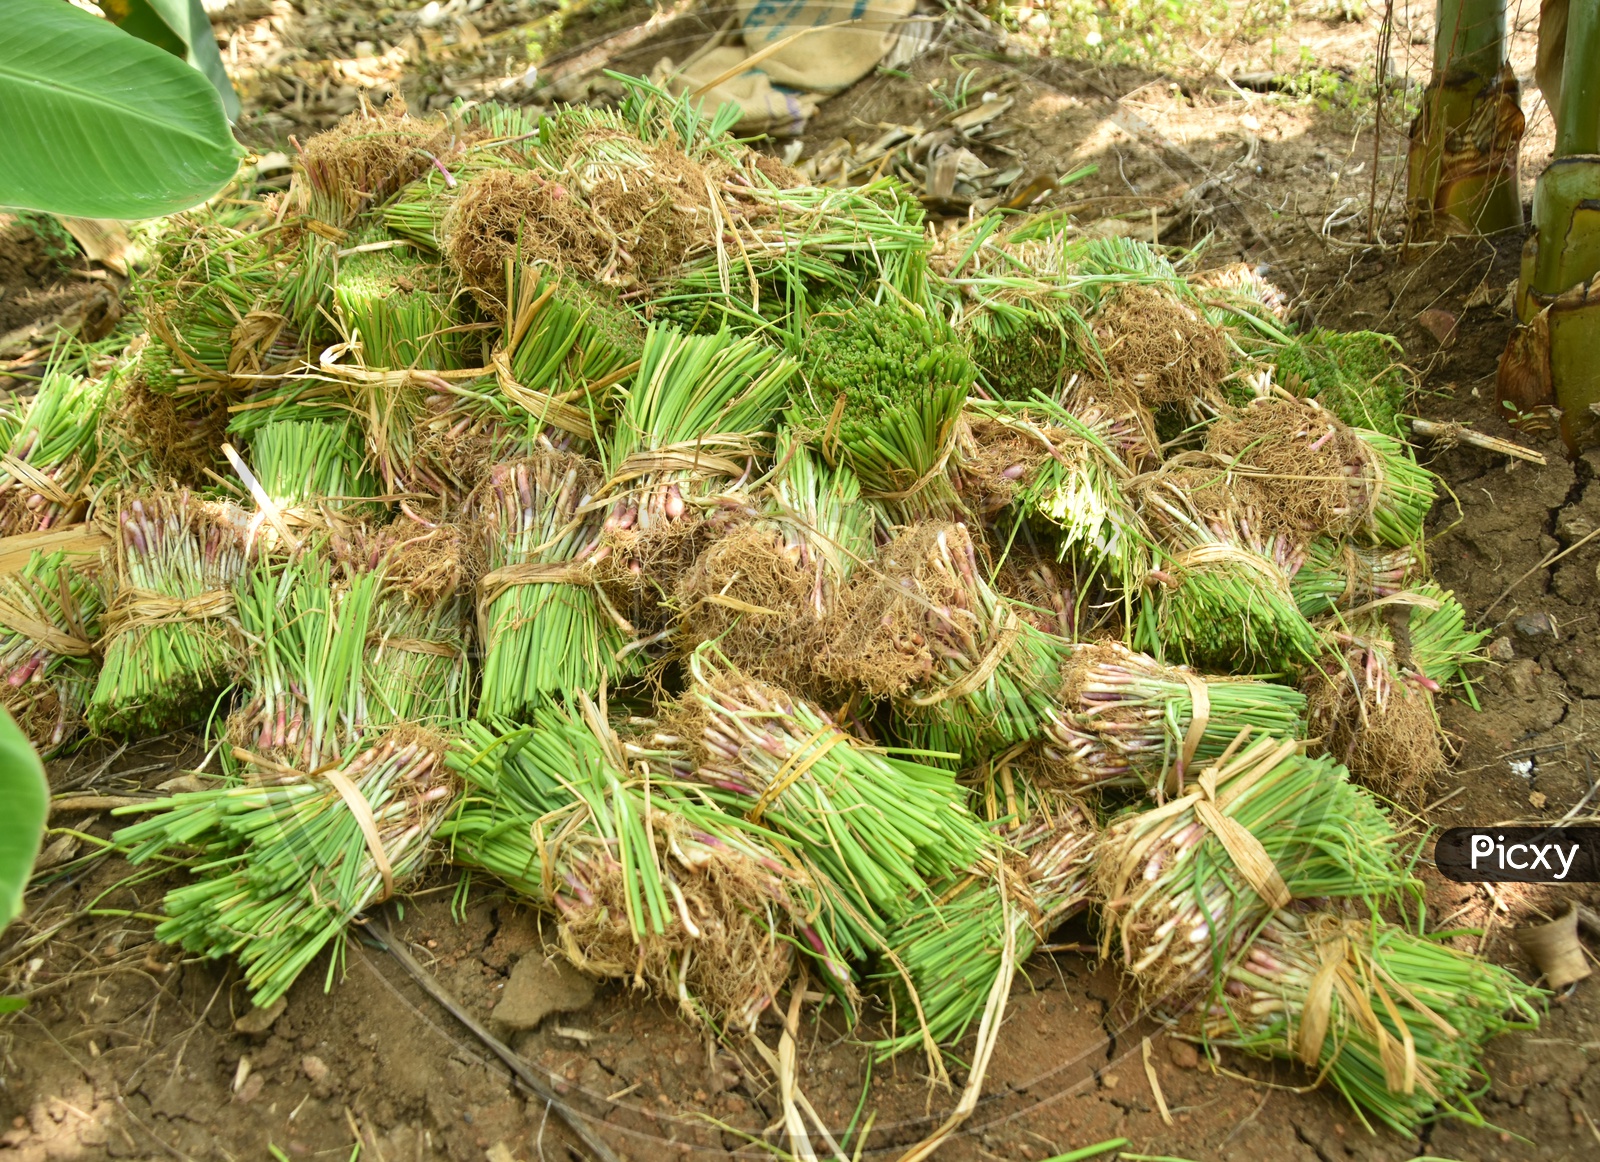 Bunch of Onion Plants in Fields at Karakatta, Undavalli